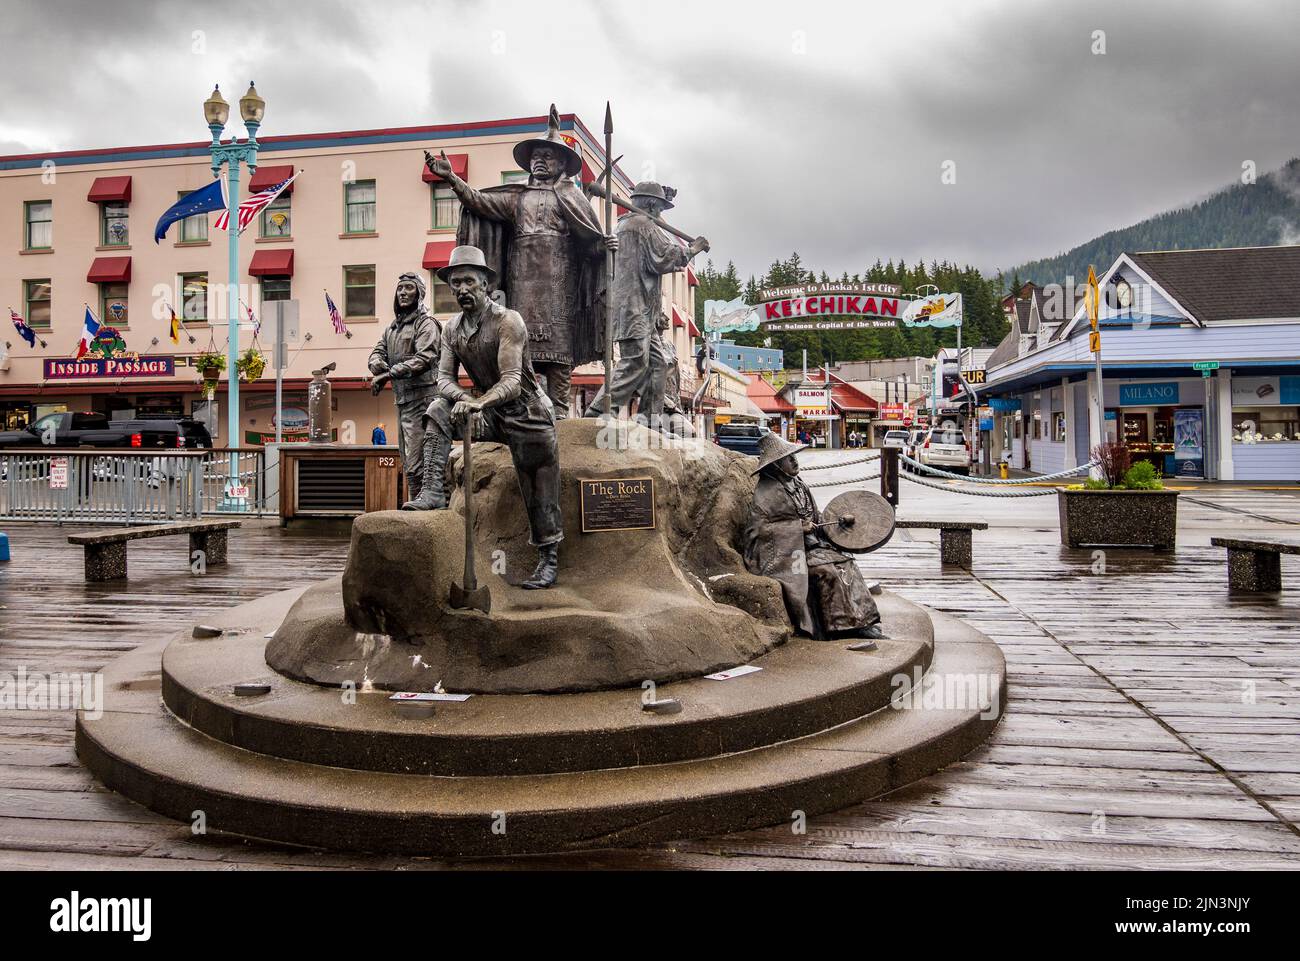 Ketchikan, AK - 10 juin 2022 : statue aux pionniers appelée le Rocher de Ketchikan en Alaska Banque D'Images